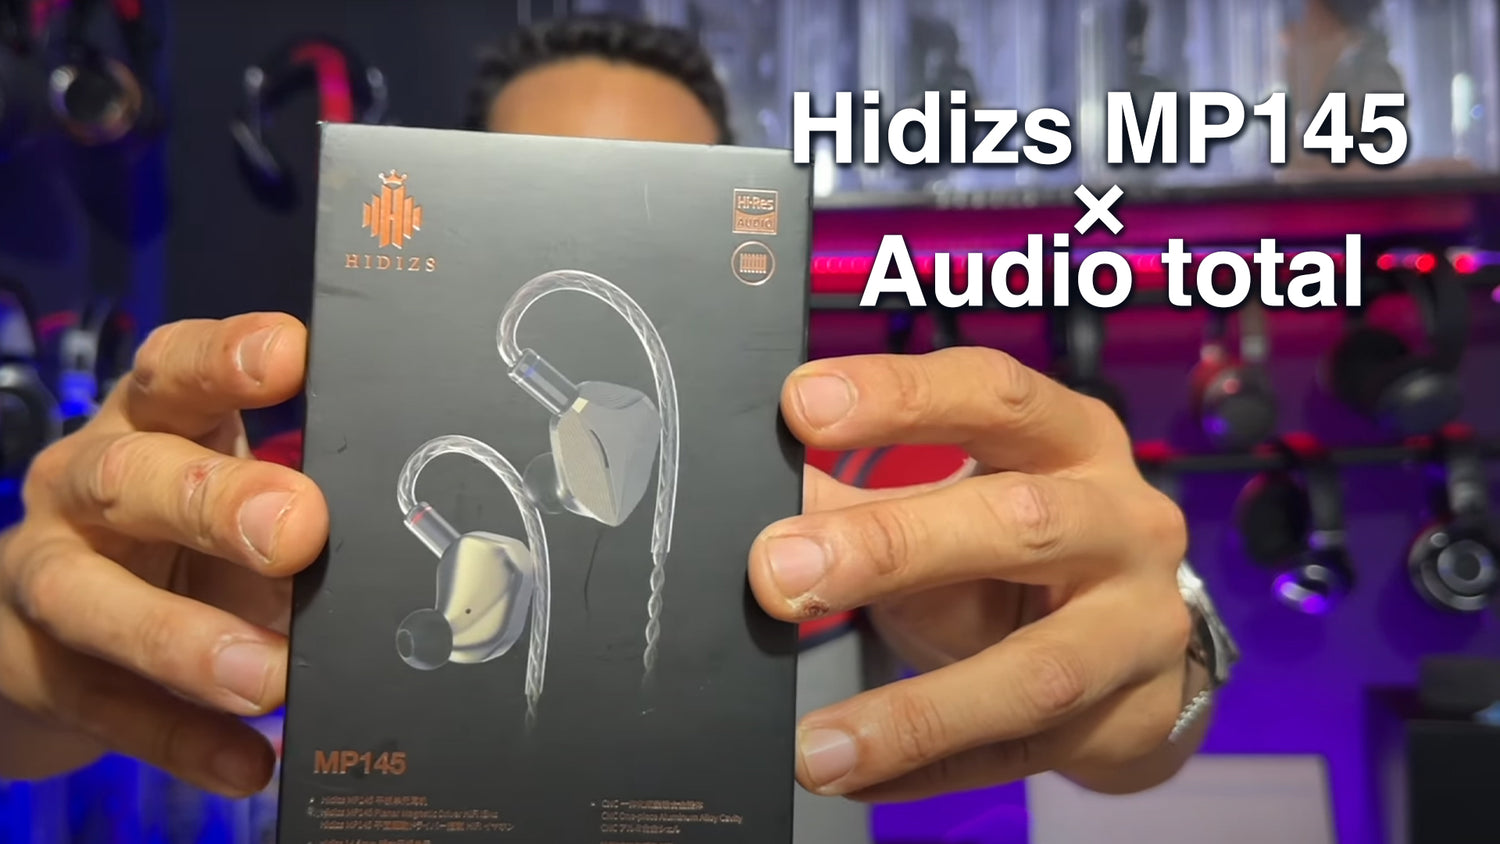 Hidizs MP145 Review - Audio total